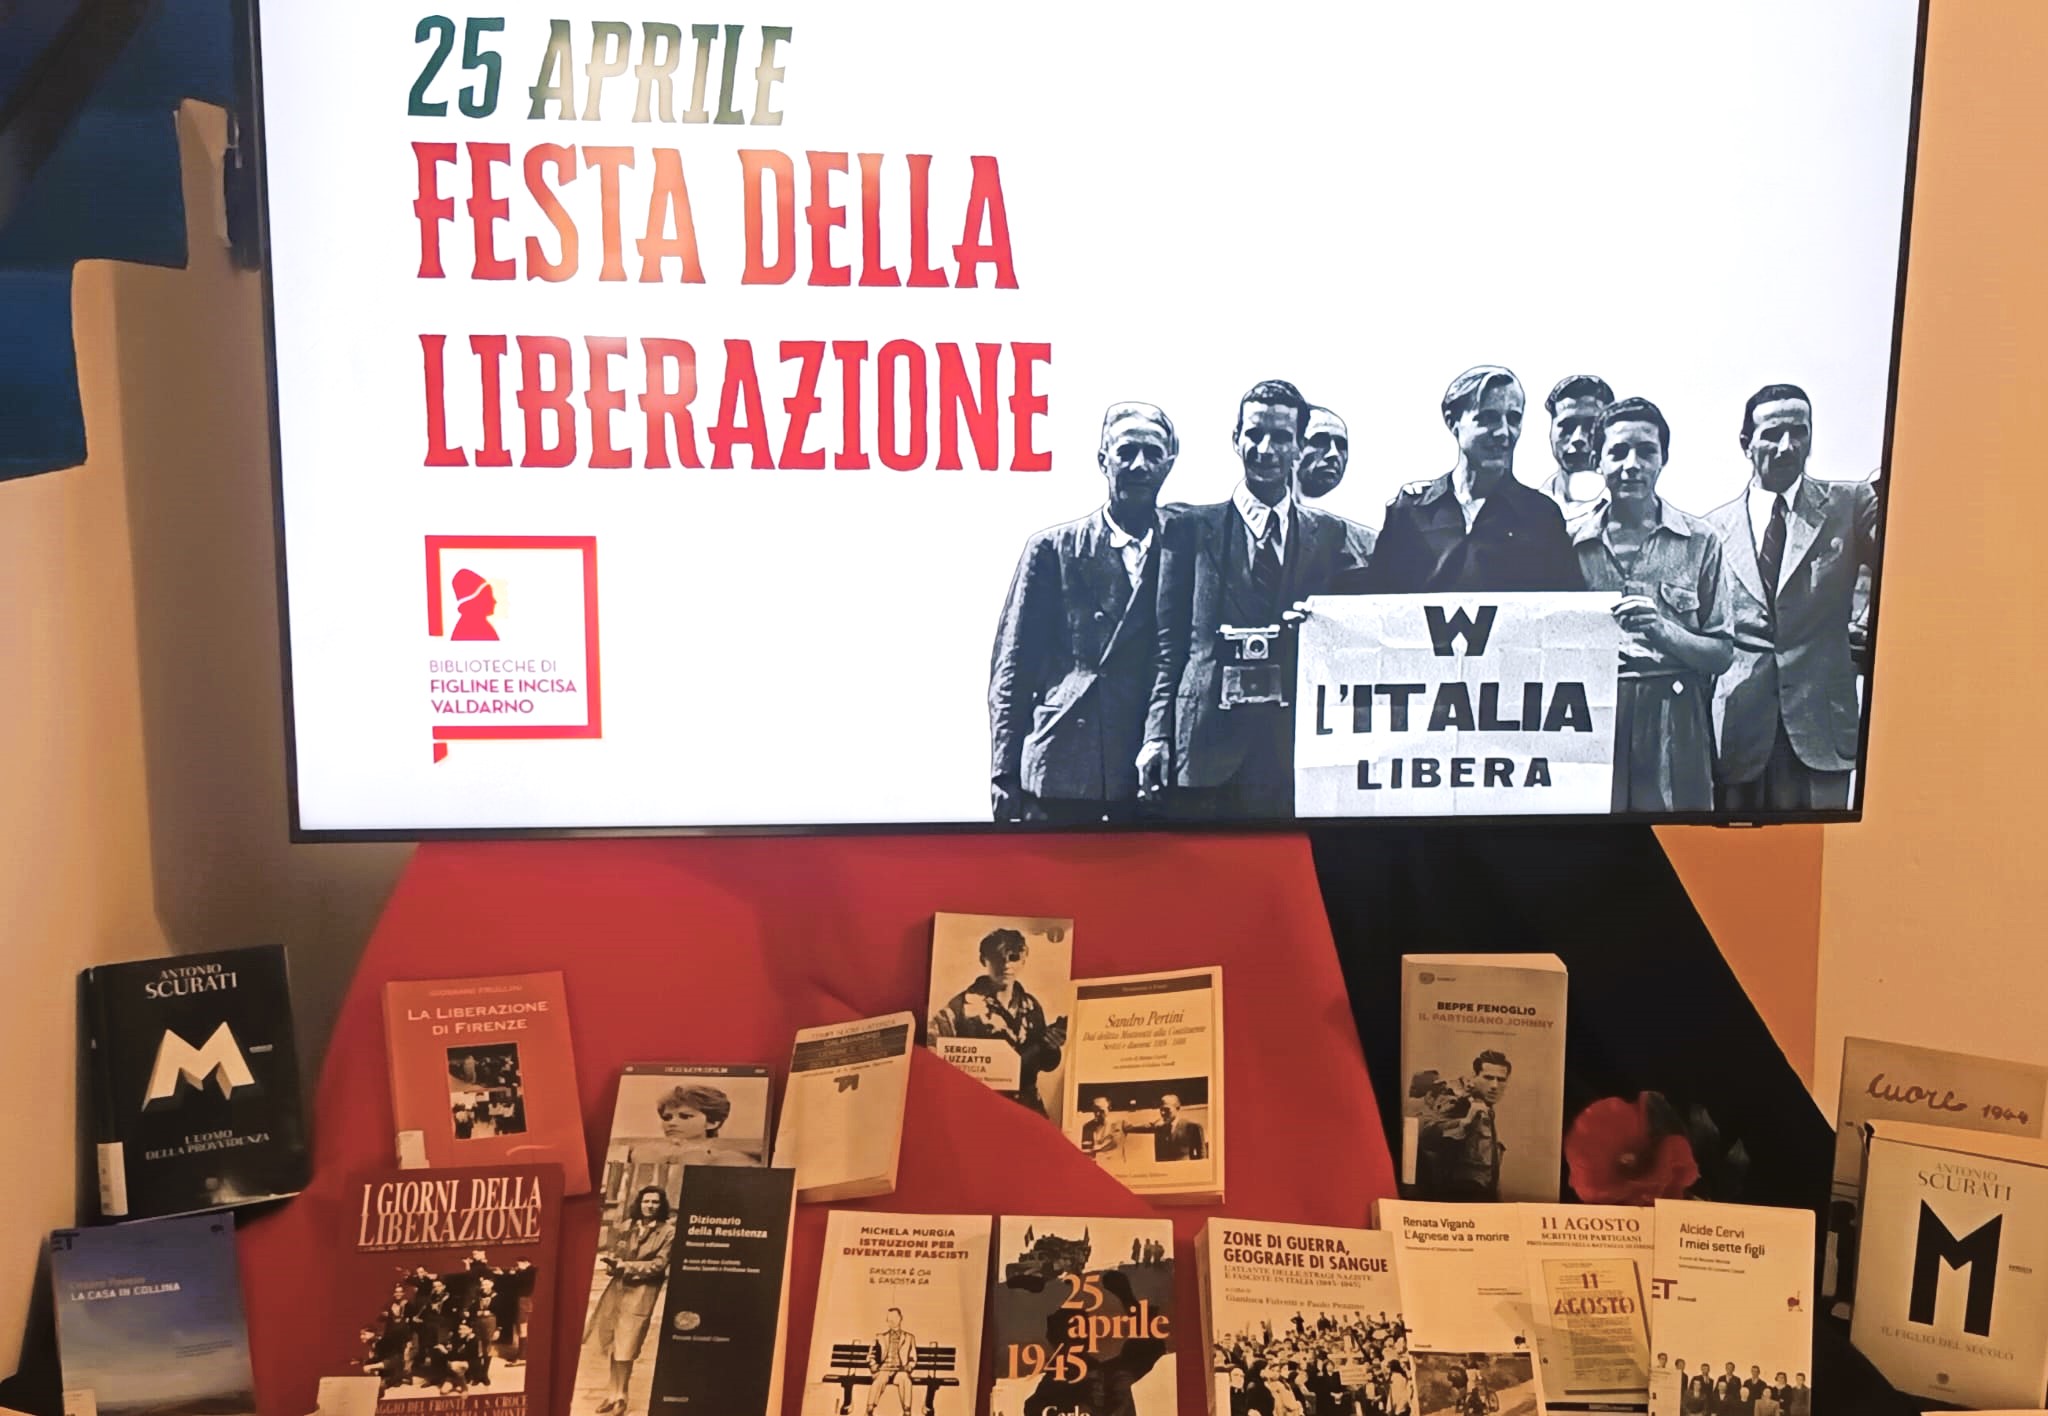 25 aprile alla Biblioteca "Marsilio Ficino" Scaffale tematico (Fonte foto Comune di Figline e Incisa Valdarno)